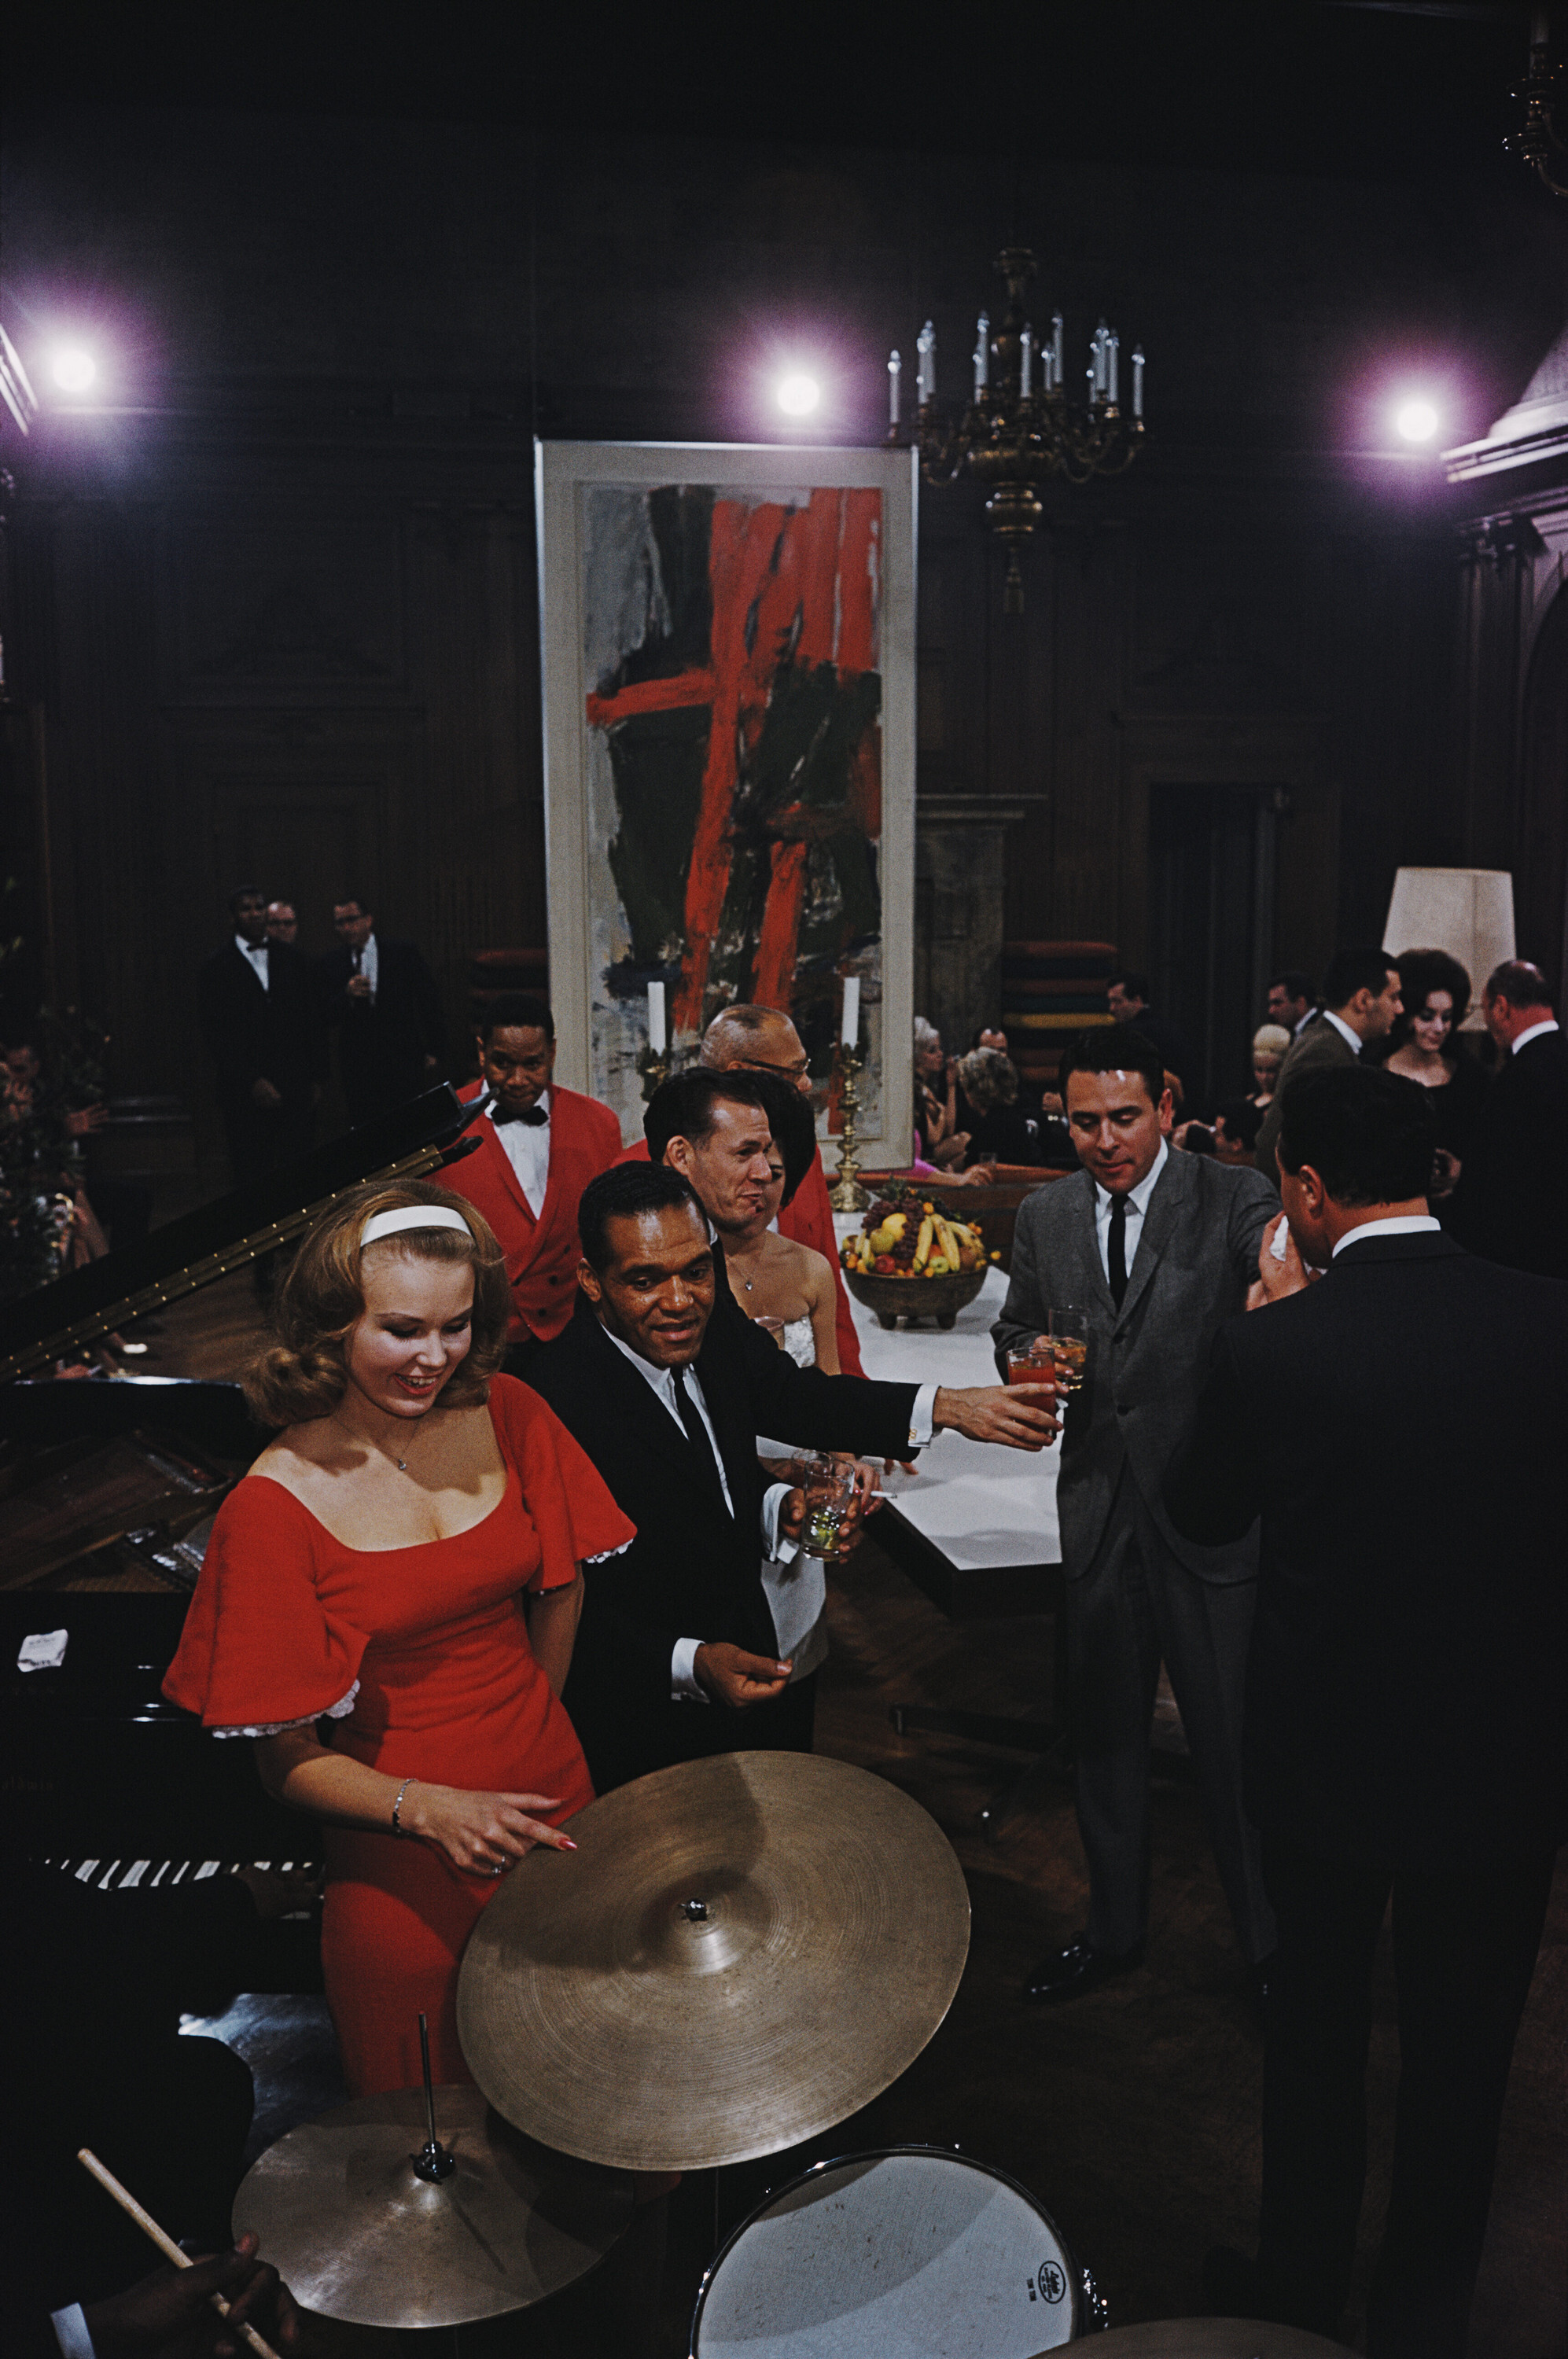 Вечеринка в особняке Playboy, 1961 год. Фотограф Слим Ааронс